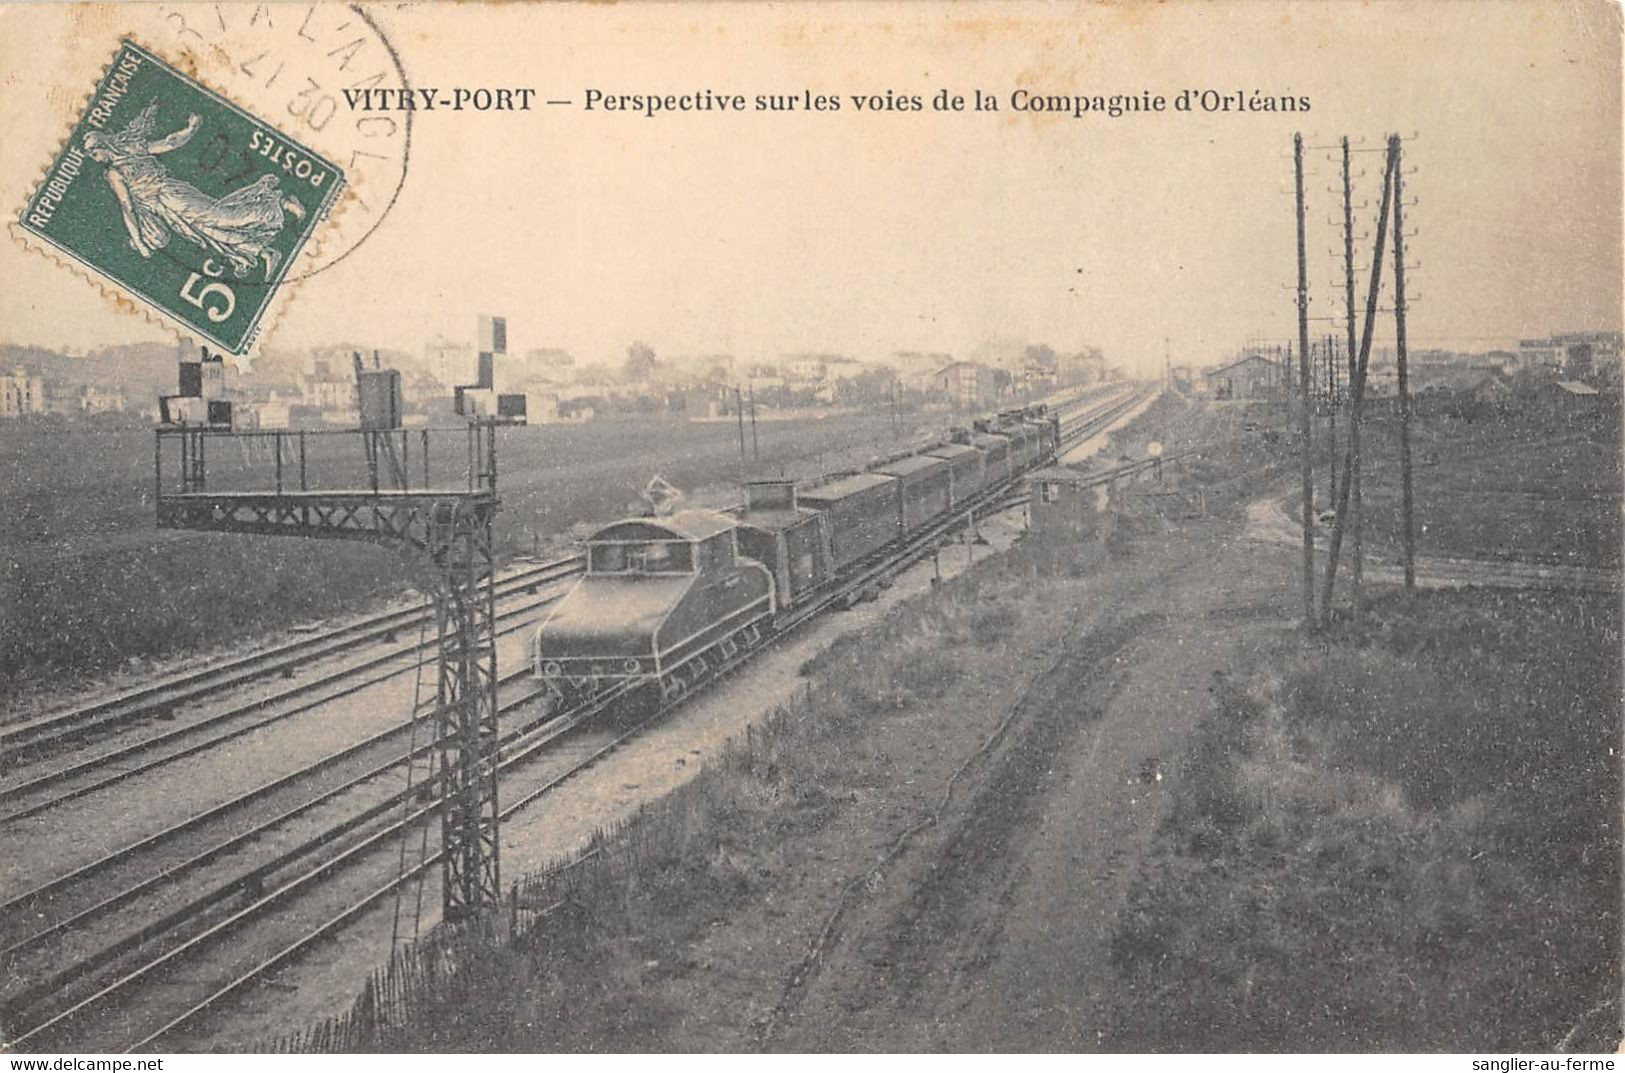 CPA 94 VITRY PORT / PERSPECTIVE SUR LES VOIES DE LA COMPAGNIE D'ORLEANS / TRAIN / LOCOMOTIVE - Vitry Sur Seine